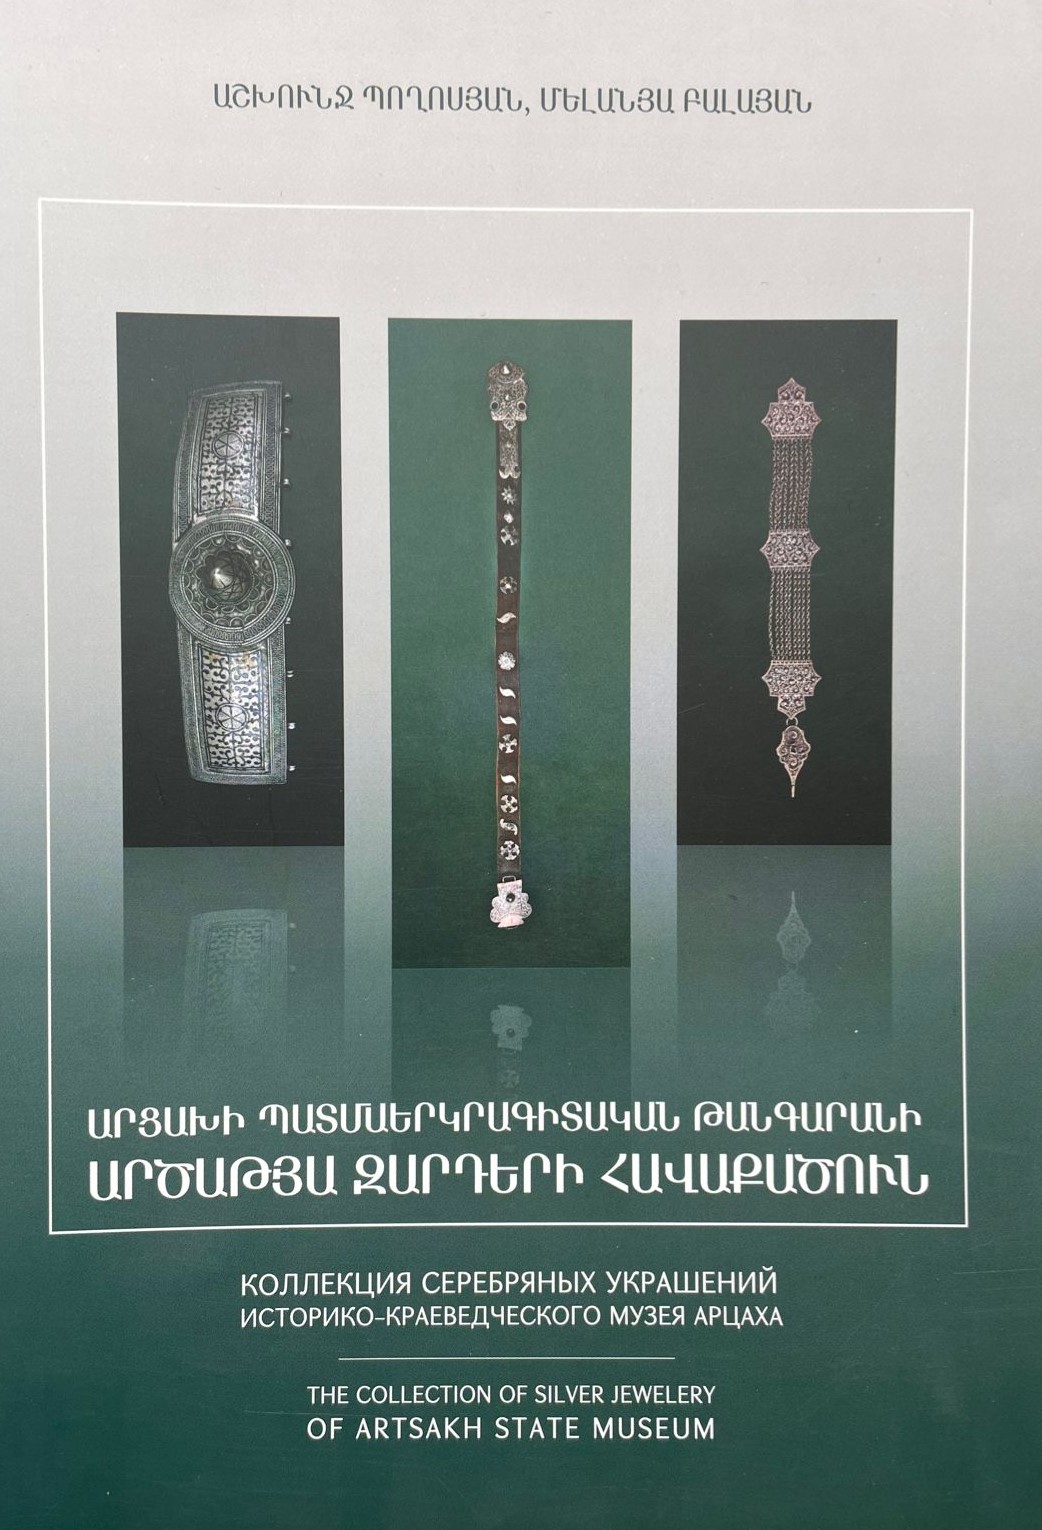 Արցախի պատմաերկրագիտական թանգարանի արծաթյա զարդերի հավաքածուն